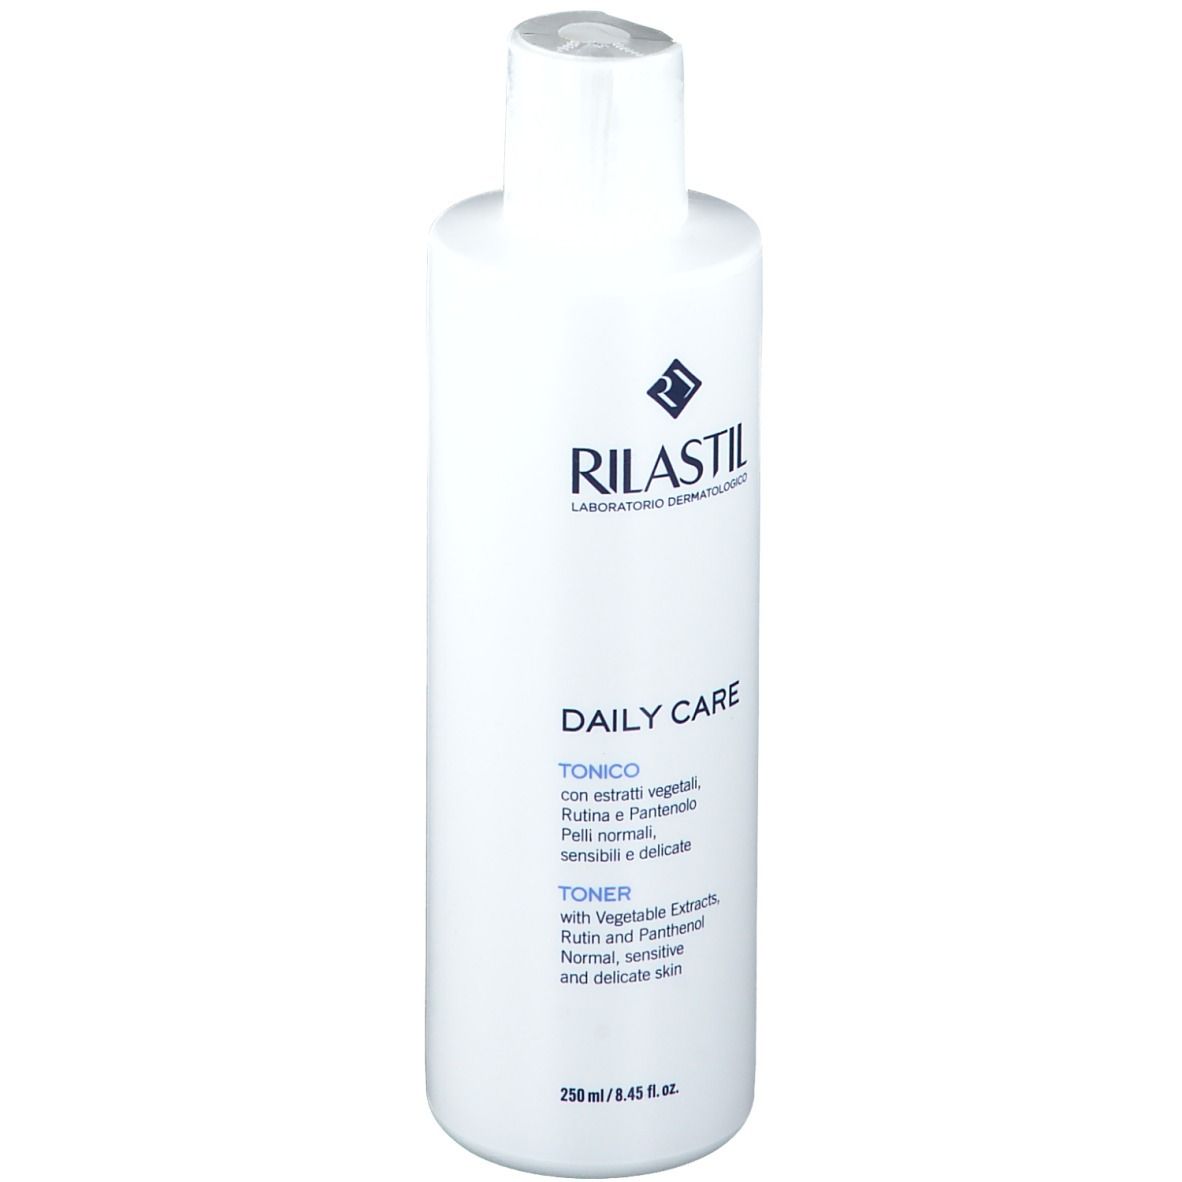 RILASTIL® Daily Care Tonico